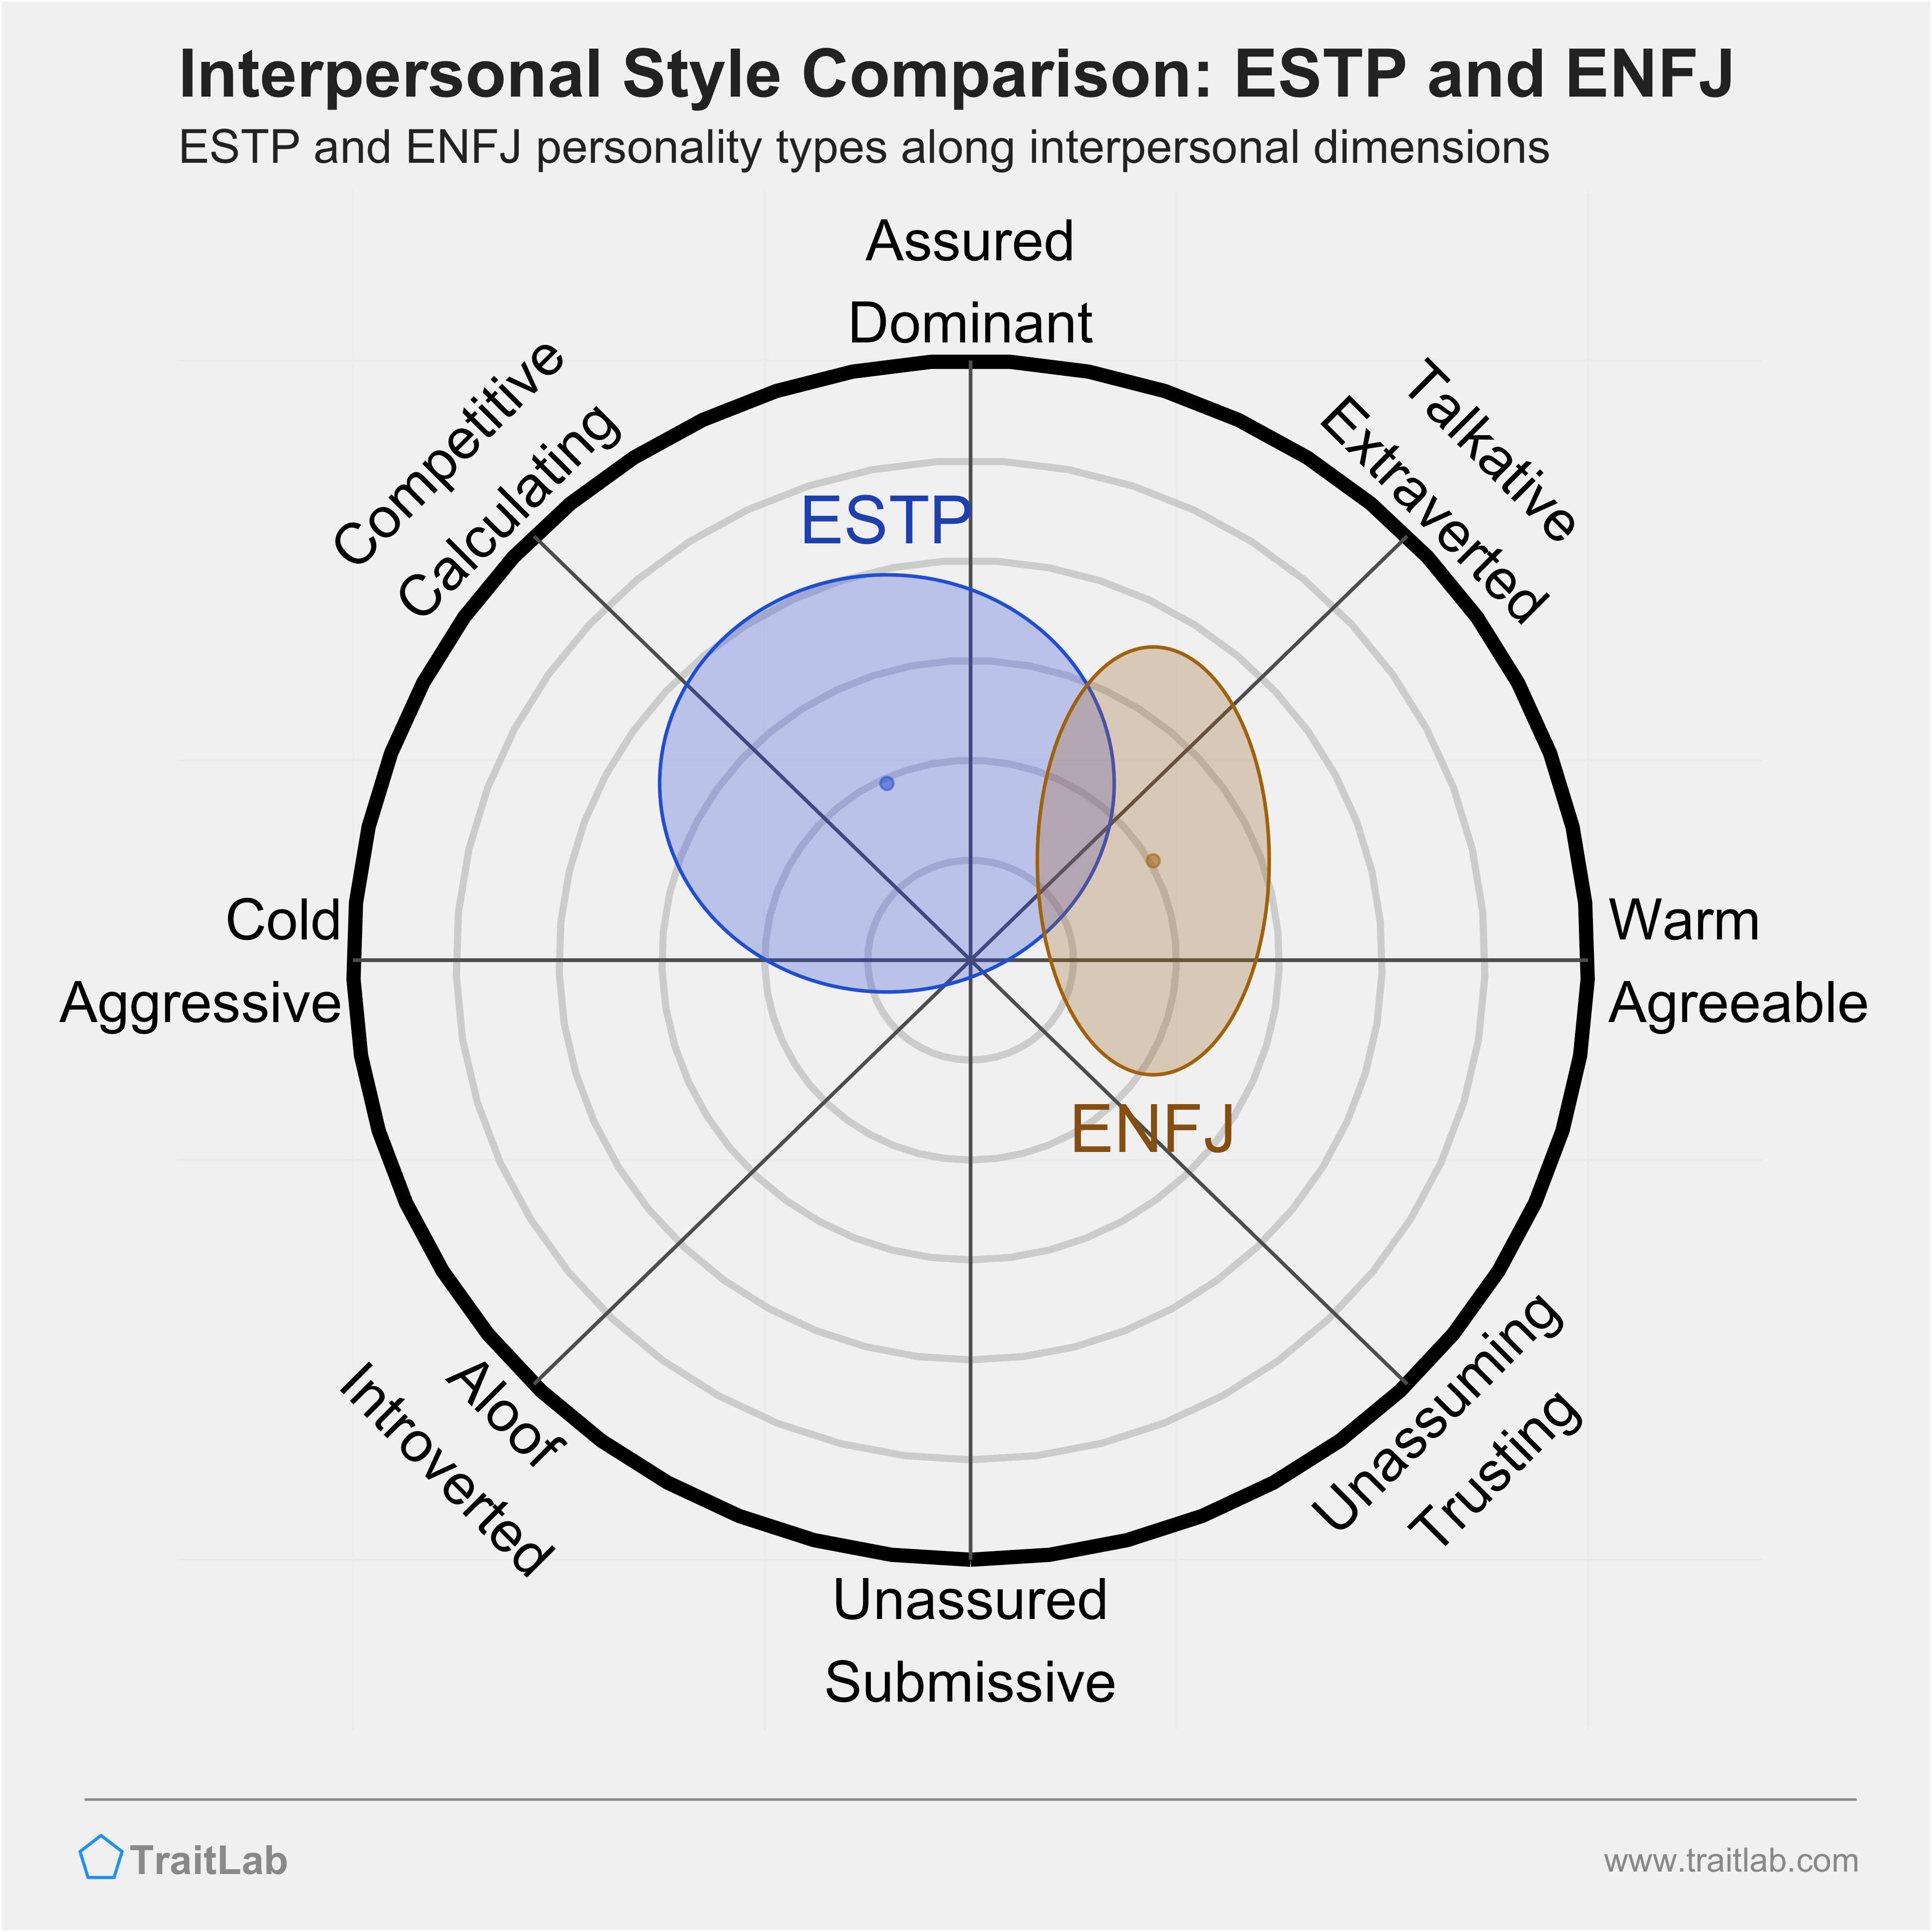 ESTP and ENFJ comparison across interpersonal dimensions